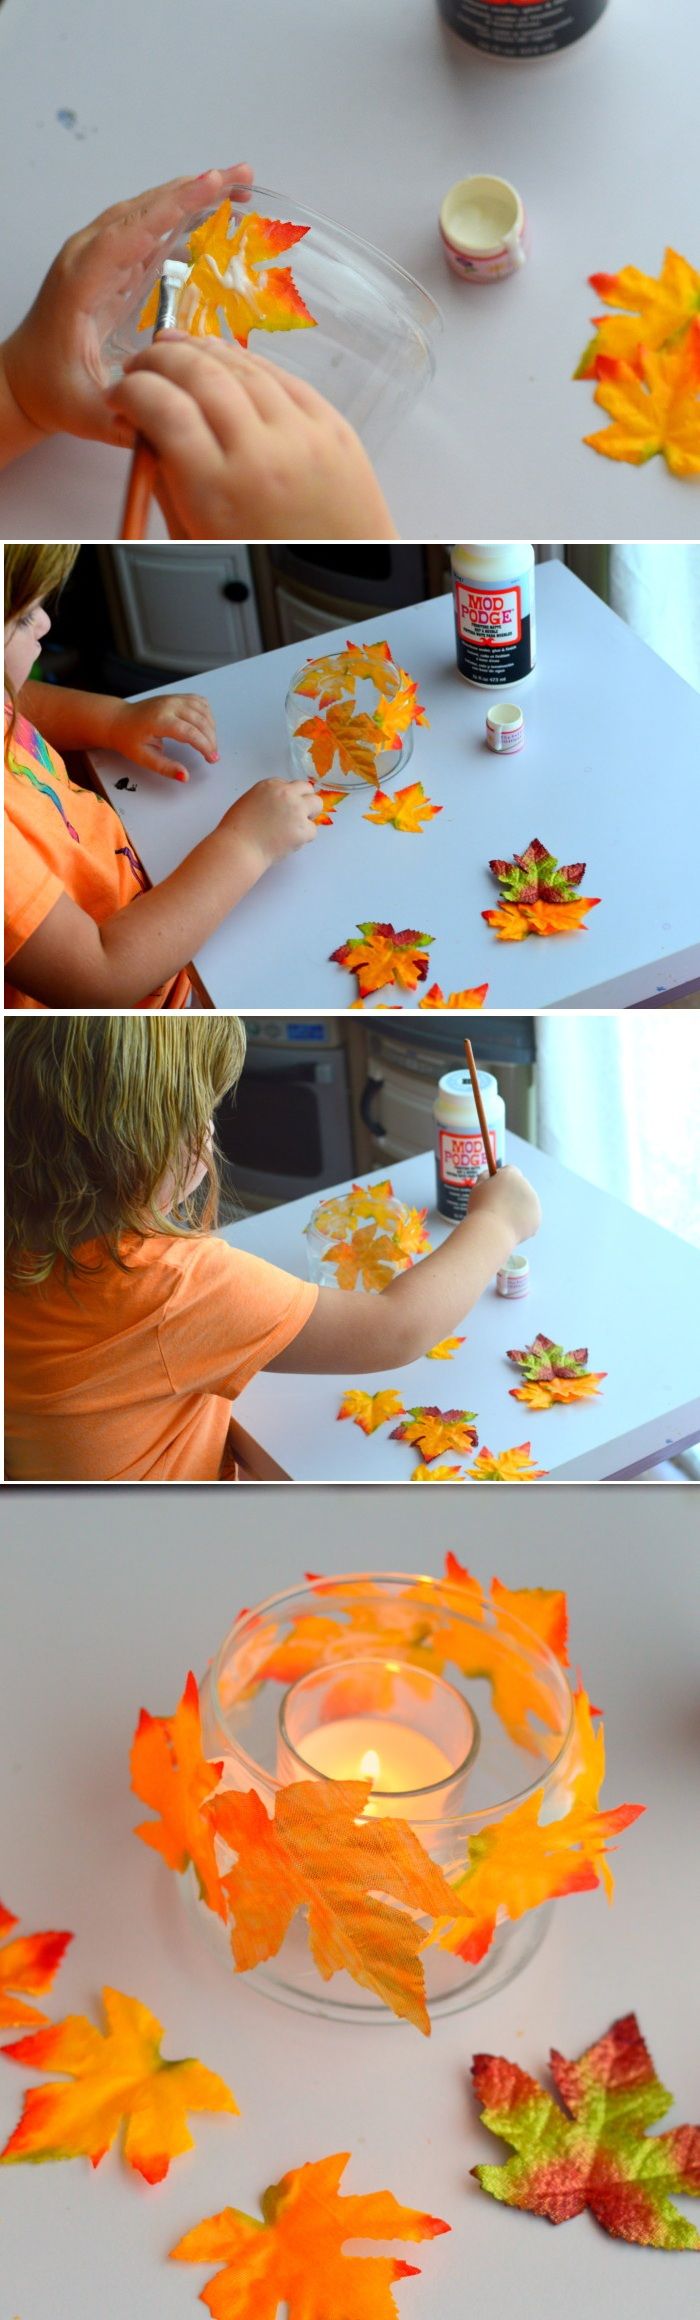 majsterkowanie z dziećmi, szklany świecznik ozdobiony liśćmi, klej, jesienna ozdoba